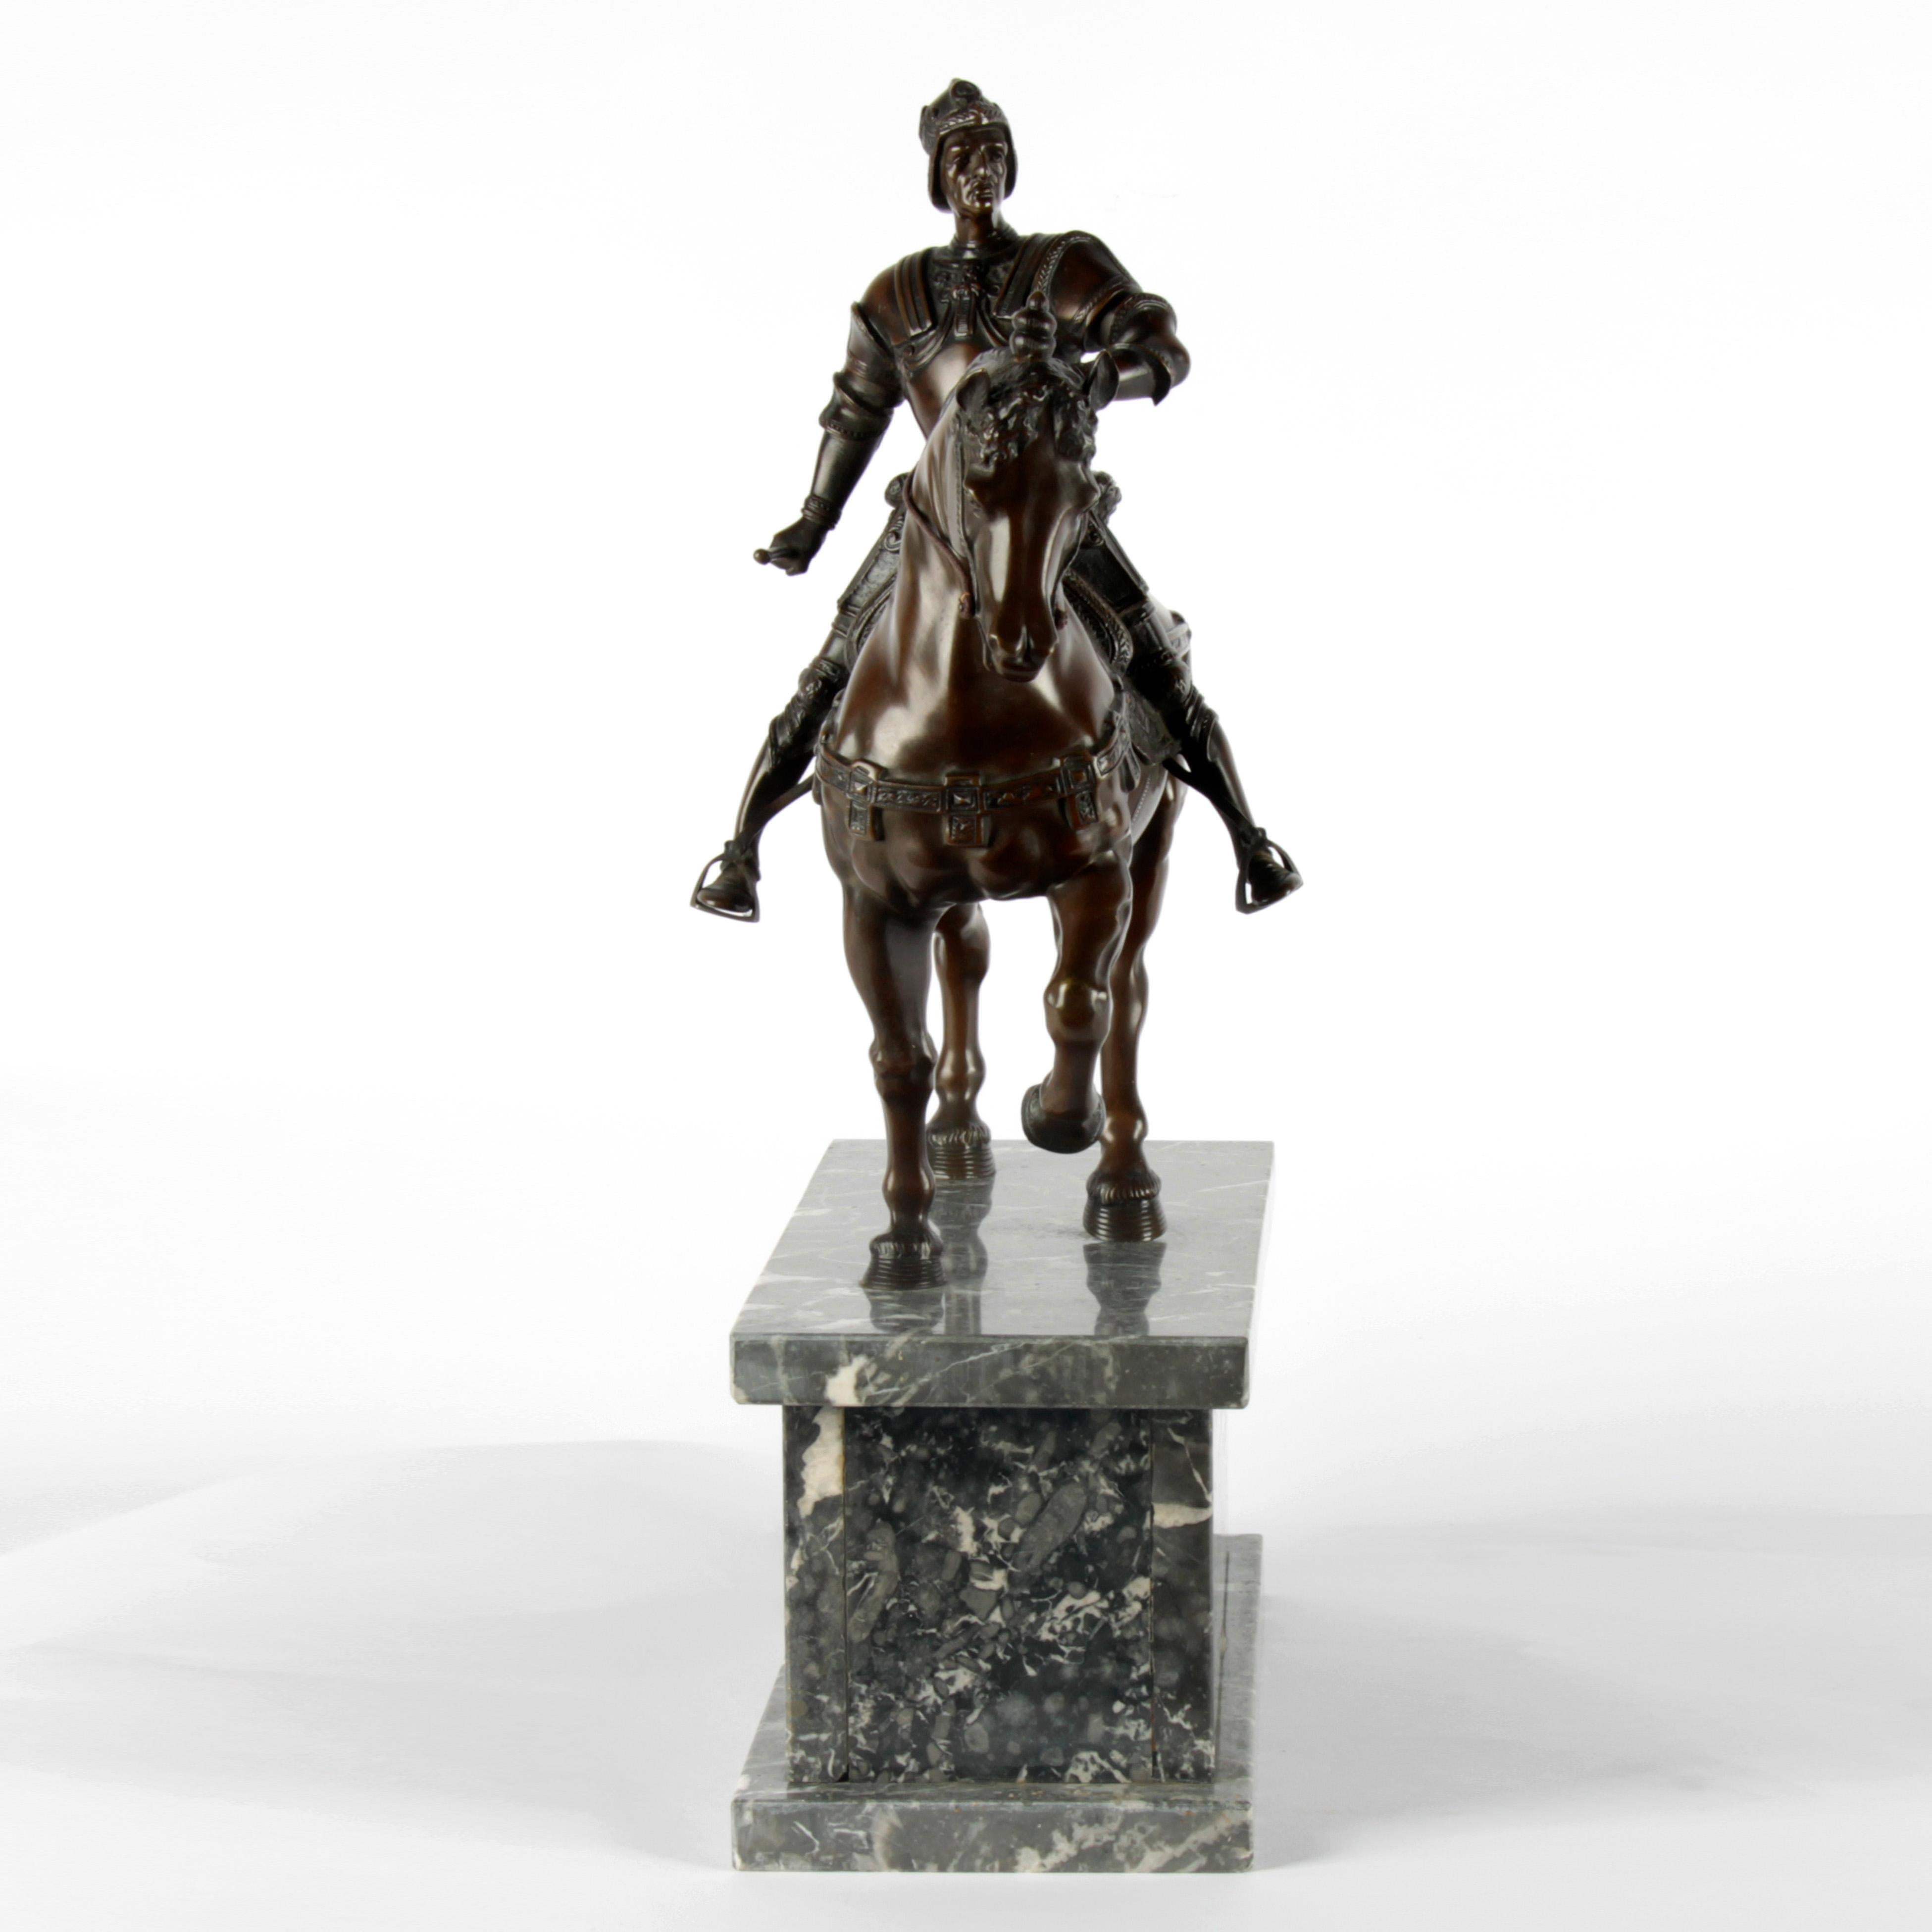 Diese patinierte Bronzestatue ist dem Original der Renaissance-Skulptur nachempfunden, die von Andrea del Verrocchio in den Jahren 1480-1488 in Italien ausgeführt wurde. Genau wie im Original zeigt es den Feldherrn Bartolomeo Colleoni, der lange